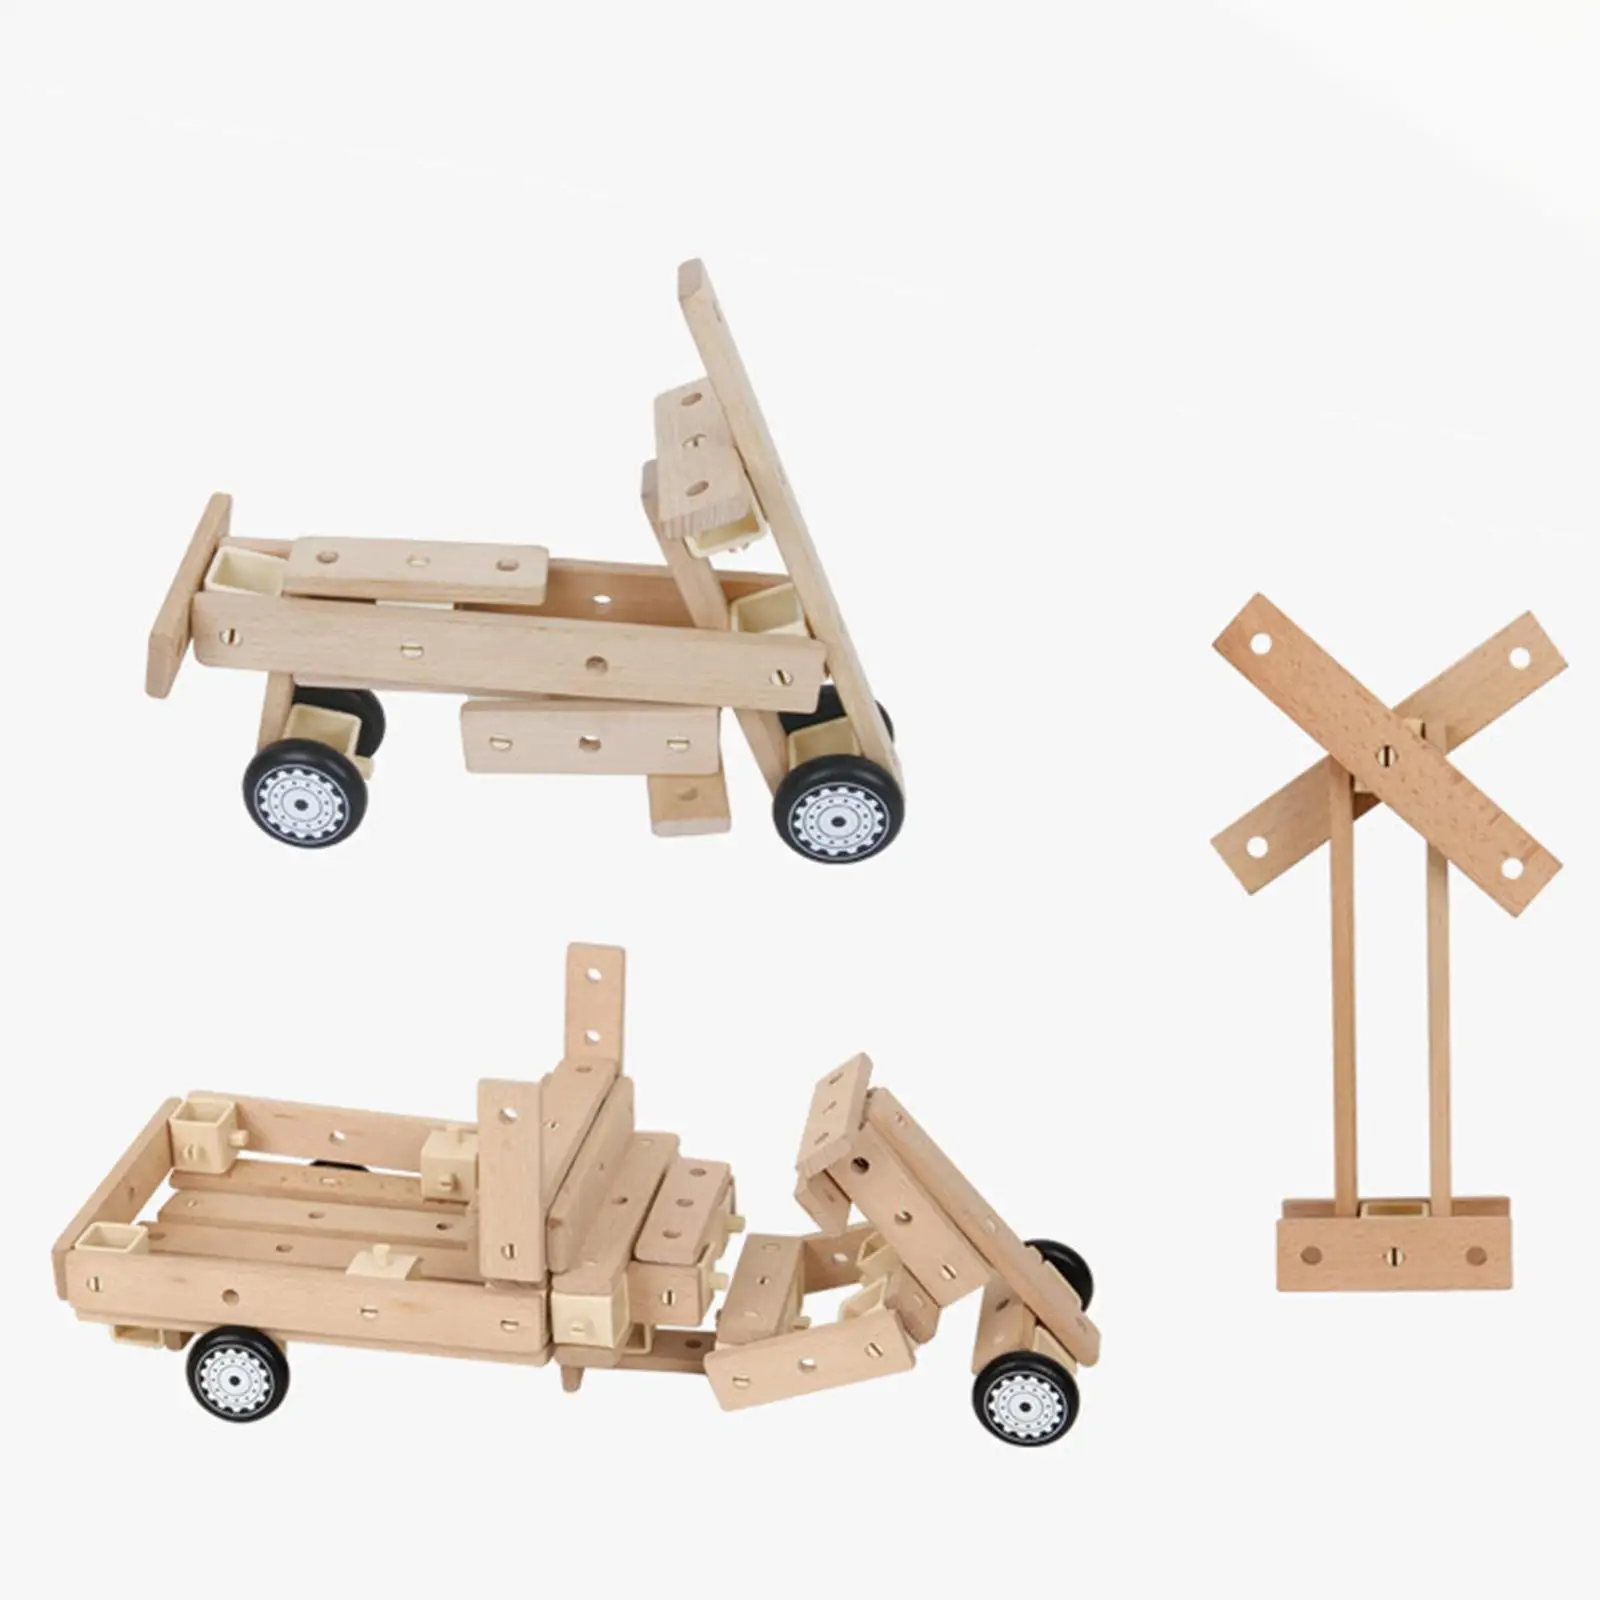 Wooden Building Blocks Set Wood Planks Set Birthday Gift Wooden Building Kit for Boys Girls